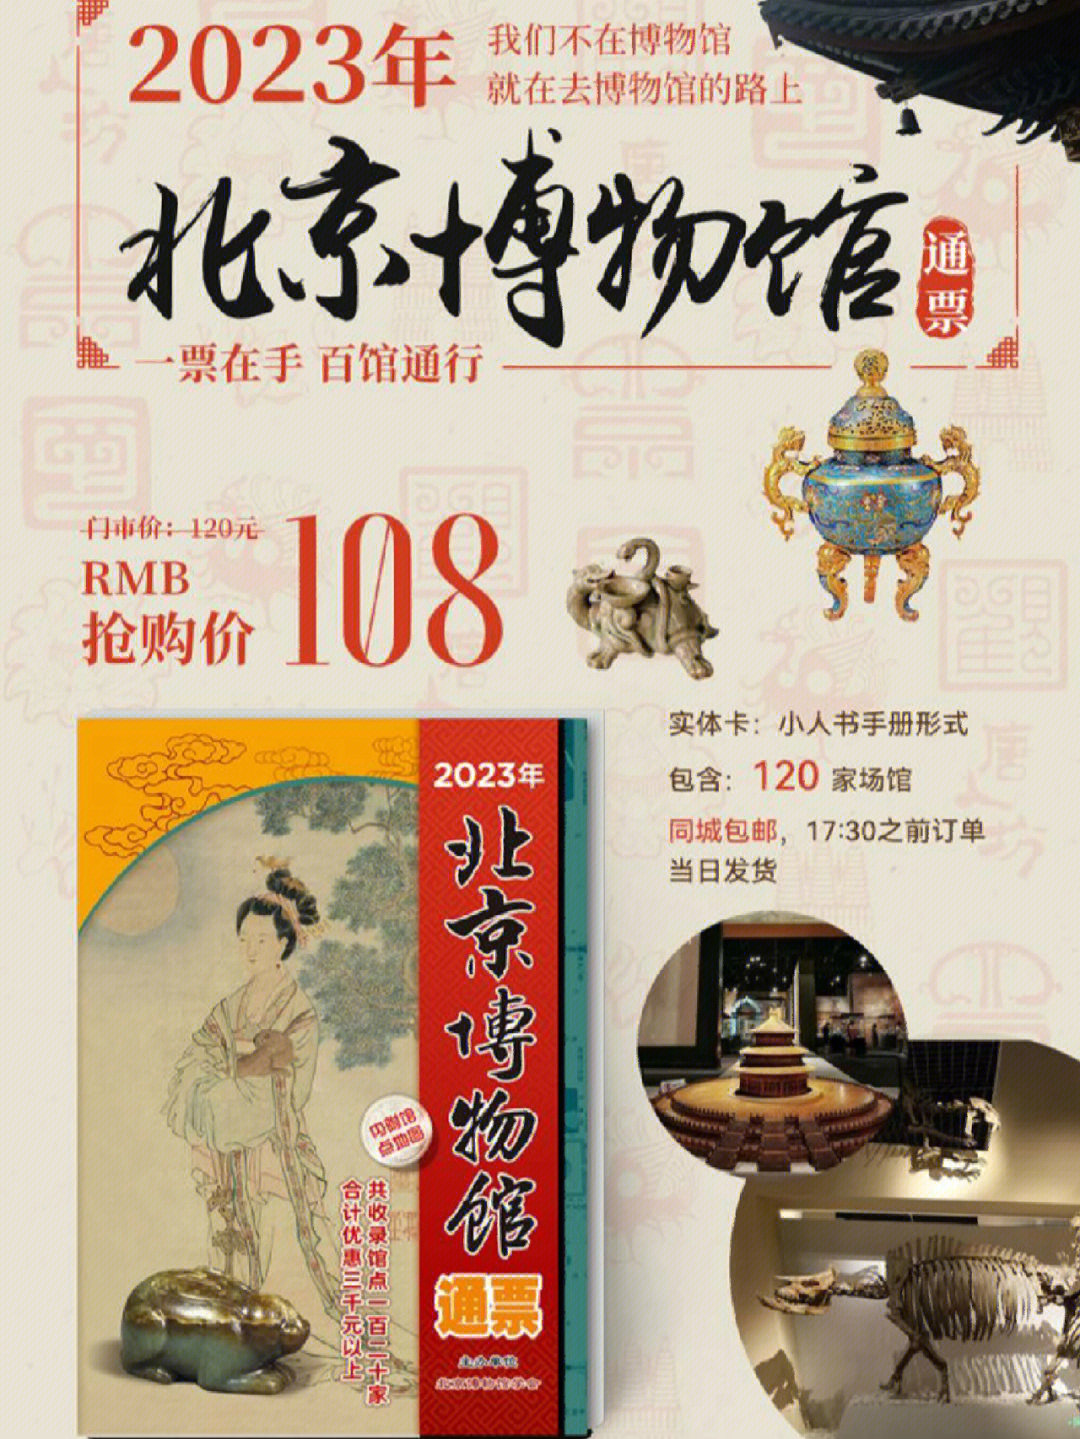 年北京博物馆通票为广大市民提供历史文化,行业科技,红色教育,艺术